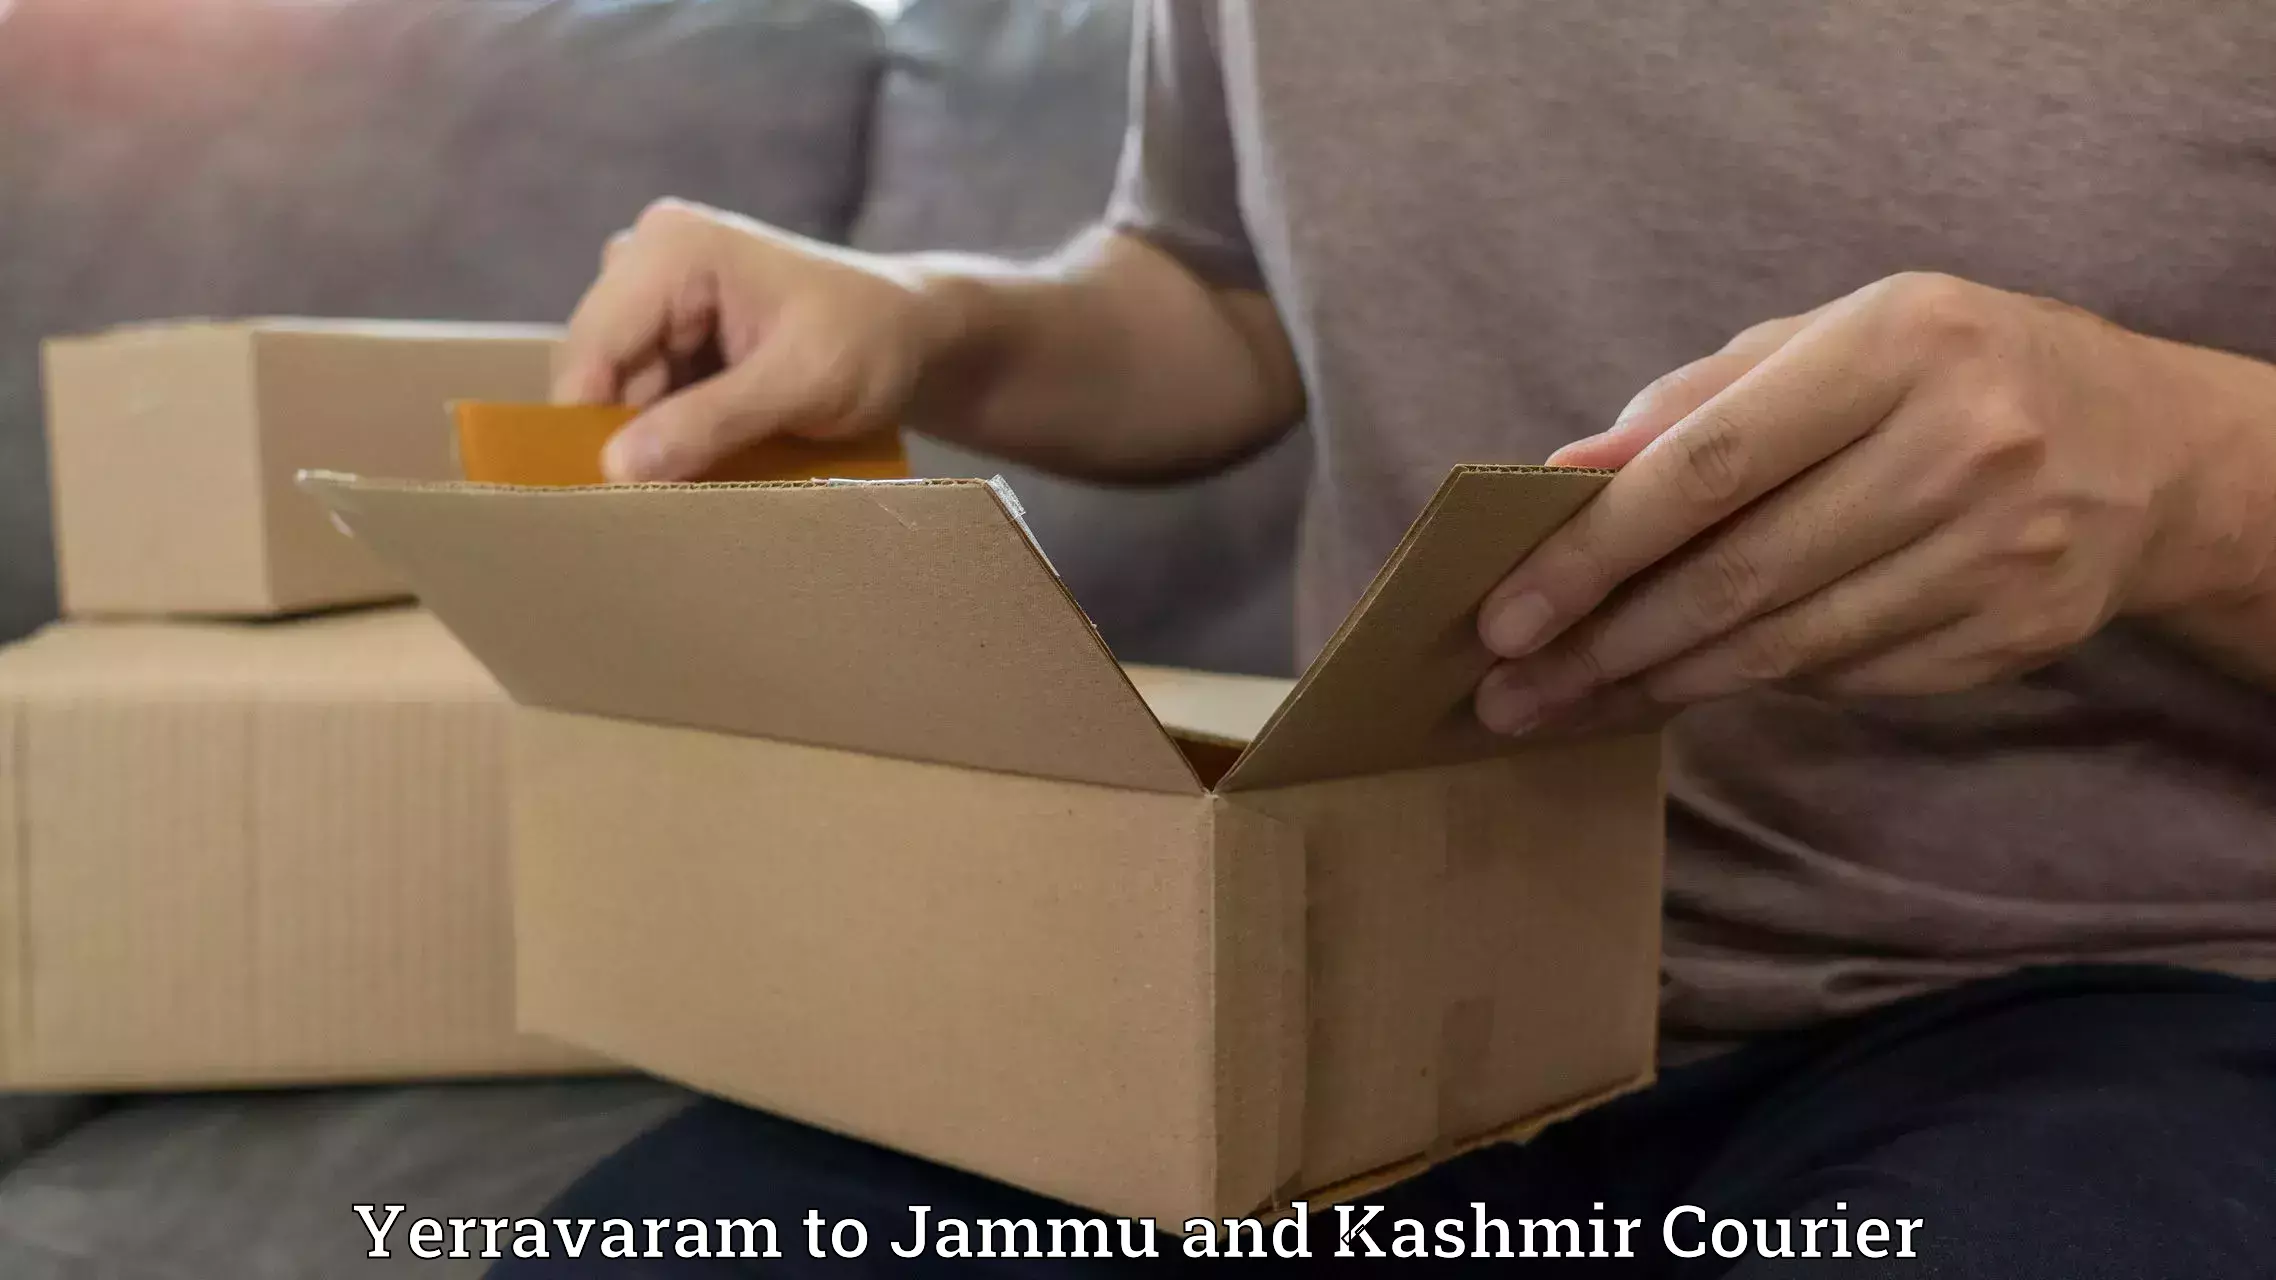 Premium courier solutions Yerravaram to University of Jammu